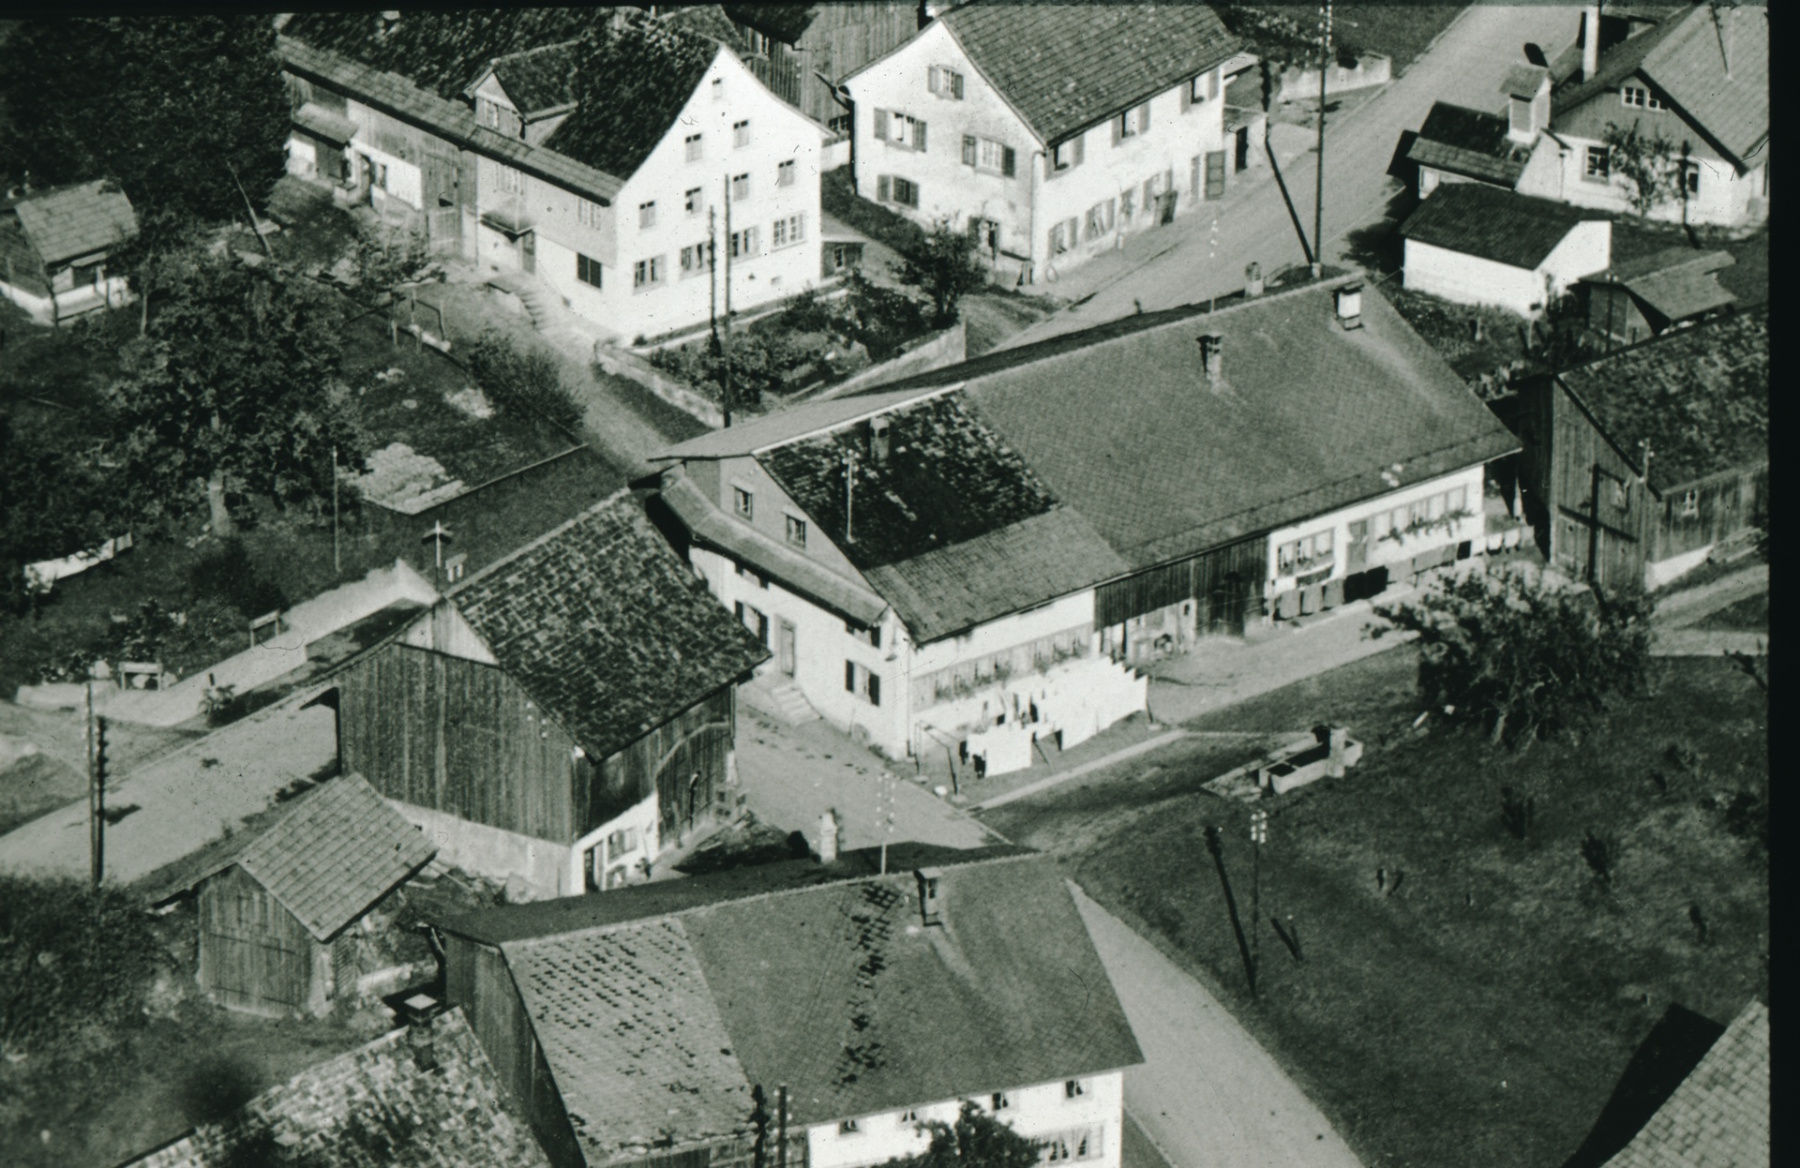 Luftaufnahme noch mit Scheune Jean Brunner, Flarz Walder / Brunner, dahinter Pilatusblick